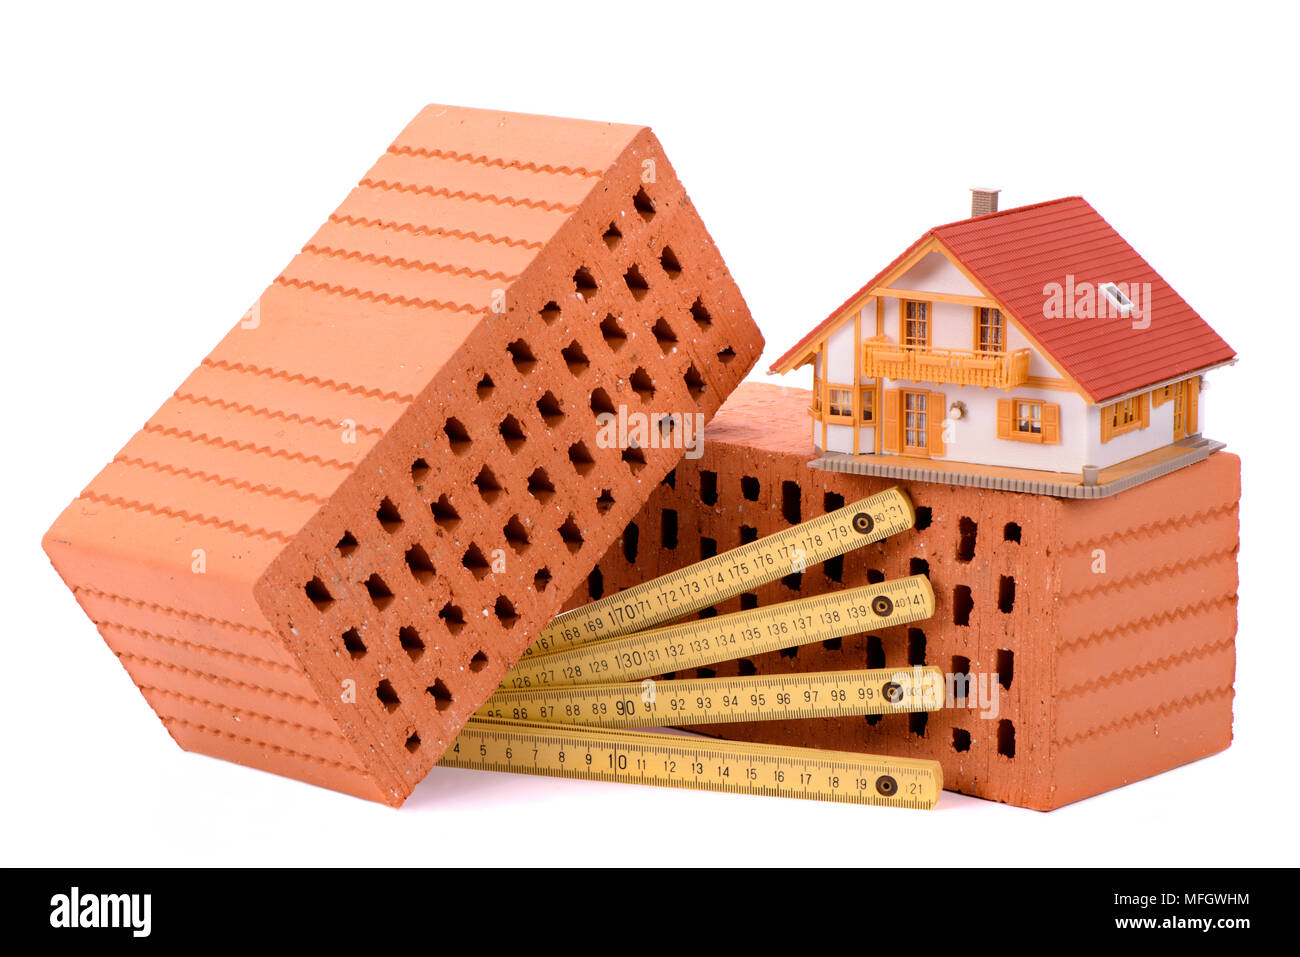 Construction d'une maison avec des briques, outils, plan et model house Banque D'Images